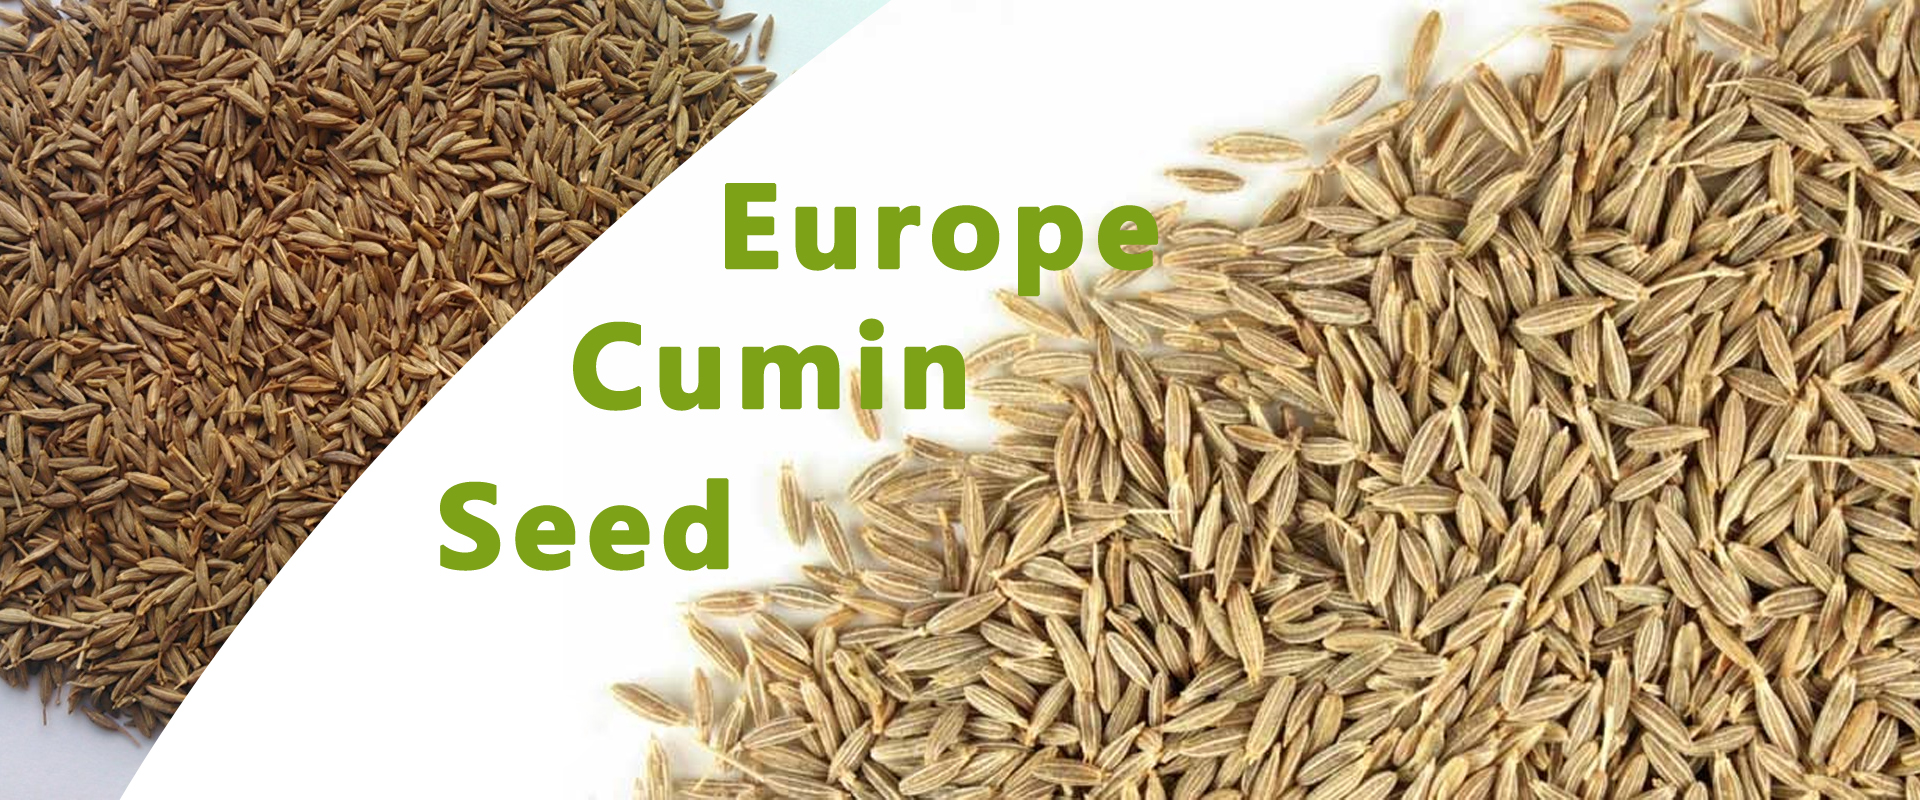 Europe Cumin Seed